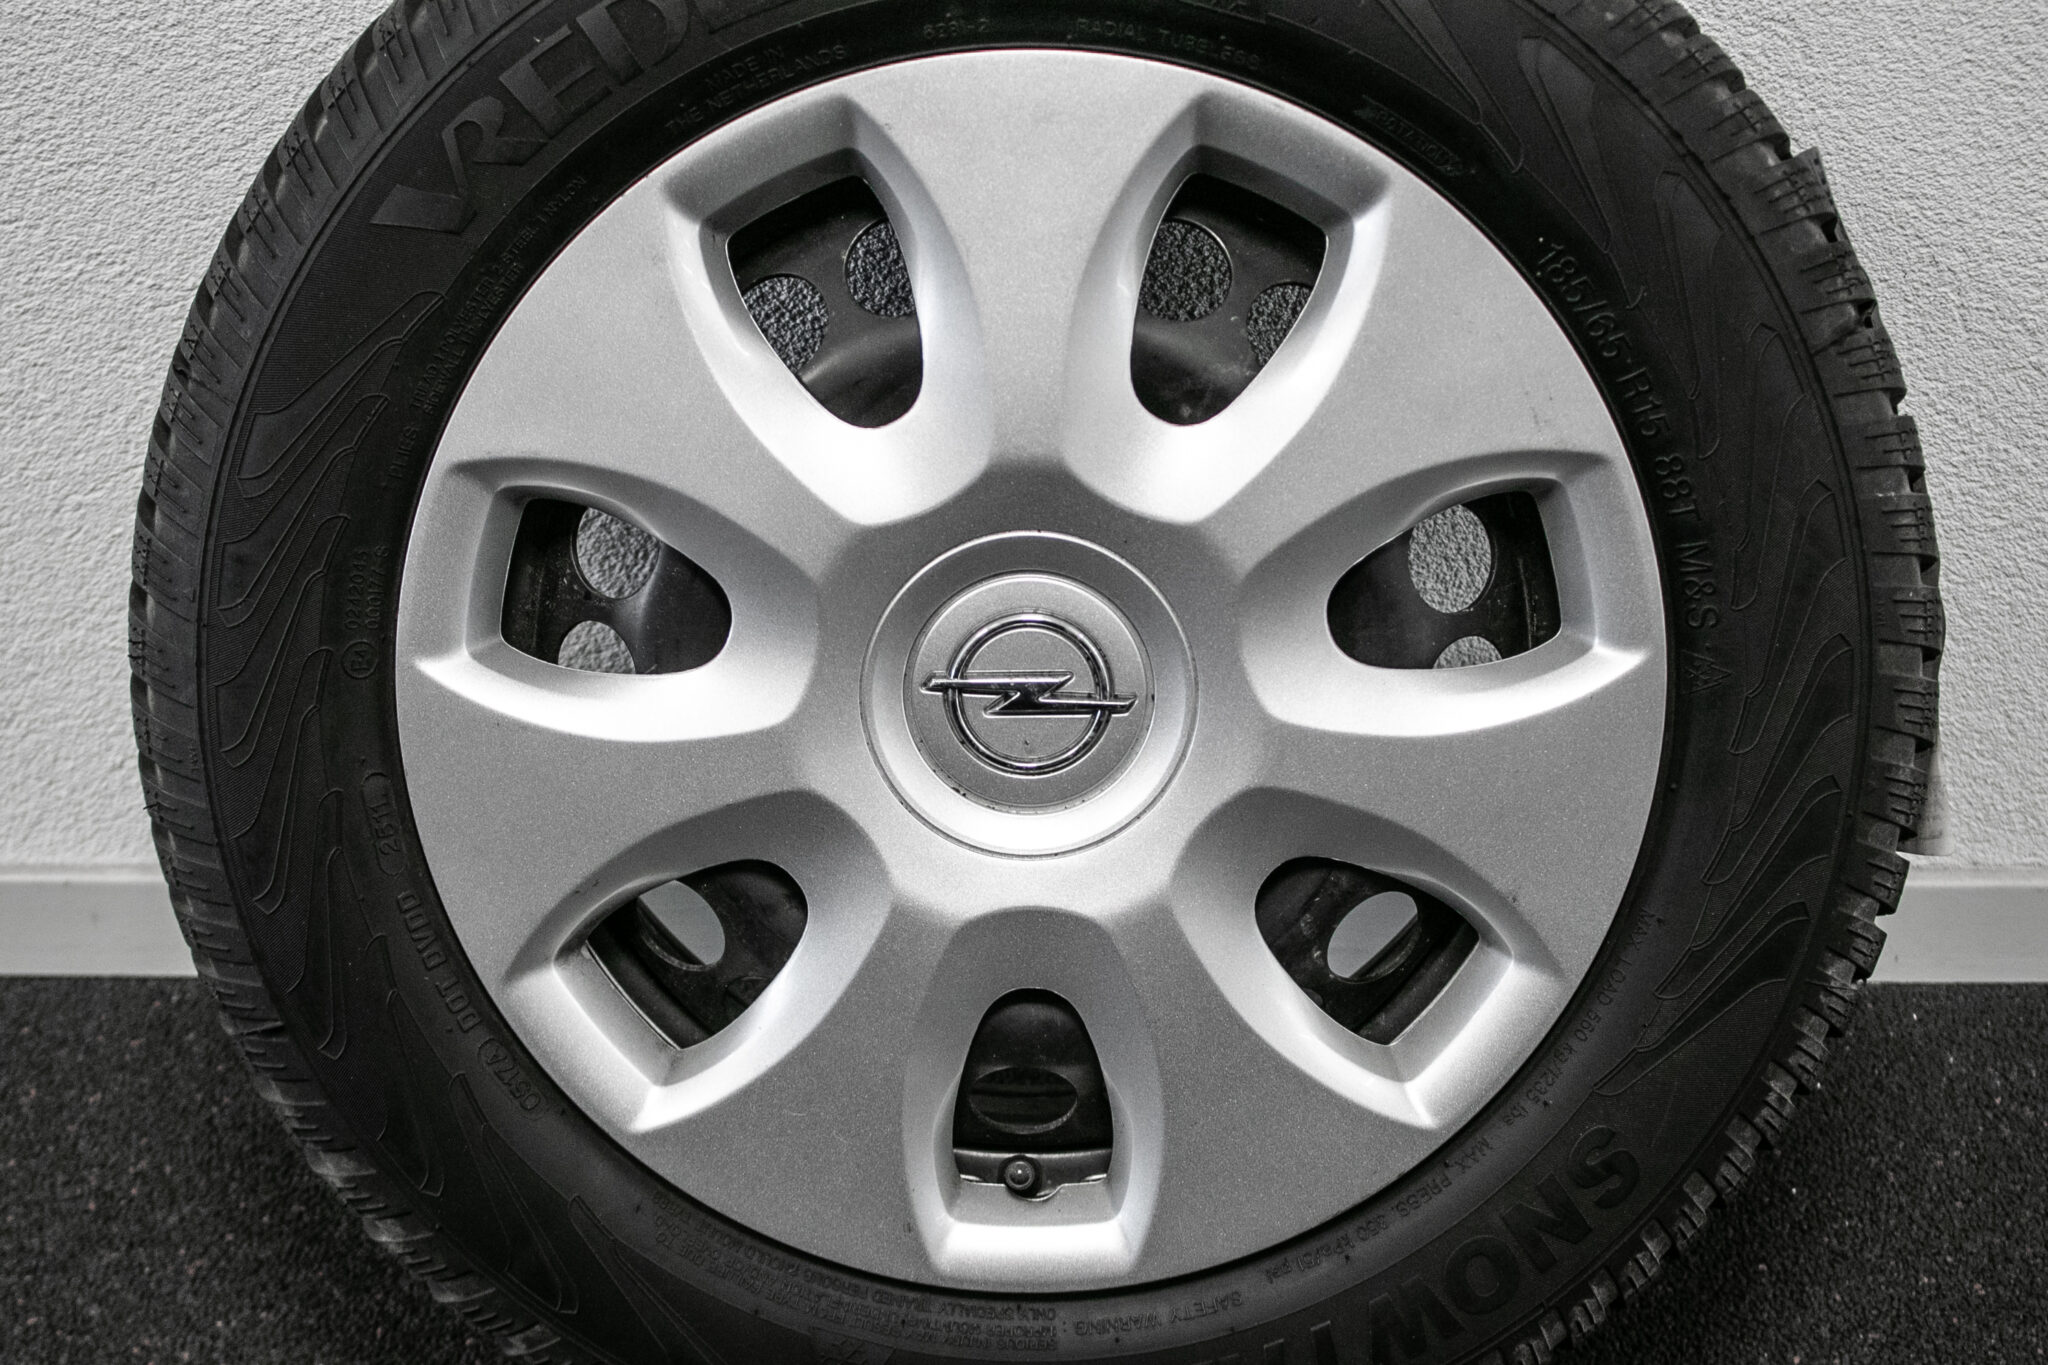 16" Winterwielen voor een Opel Corsa 
Gebruikt. Profieldiepte: 6.5mm - 5.5mm